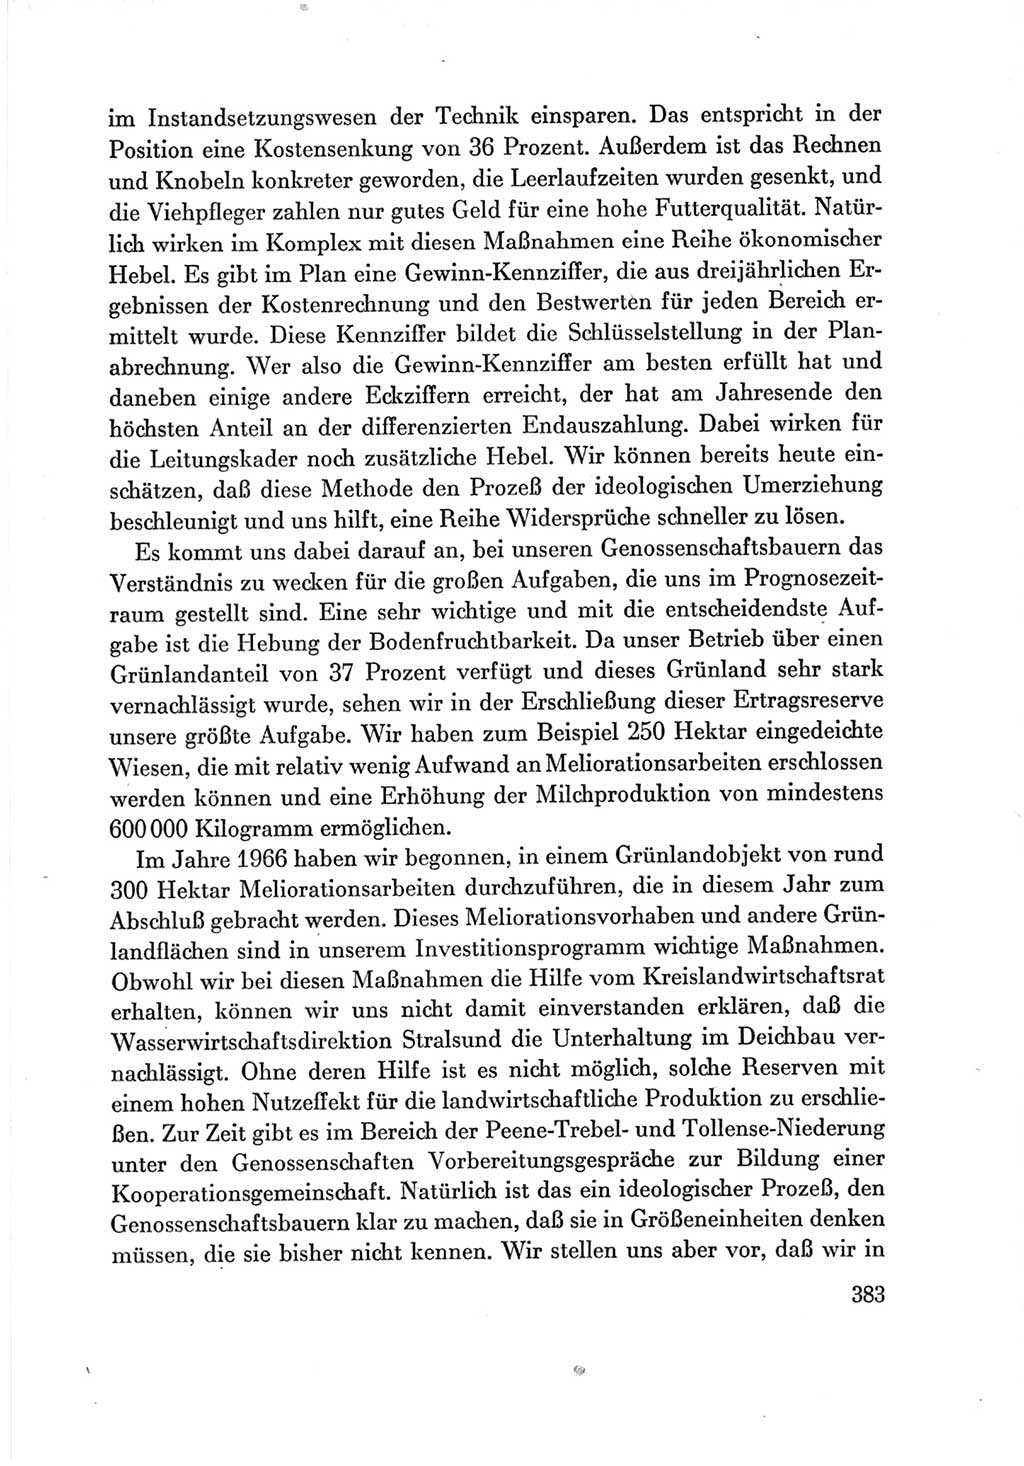 Protokoll der Verhandlungen des Ⅶ. Parteitages der Sozialistischen Einheitspartei Deutschlands (SED) [Deutsche Demokratische Republik (DDR)] 1967, Band Ⅲ, Seite 383 (Prot. Verh. Ⅶ. PT SED DDR 1967, Bd. Ⅲ, S. 383)